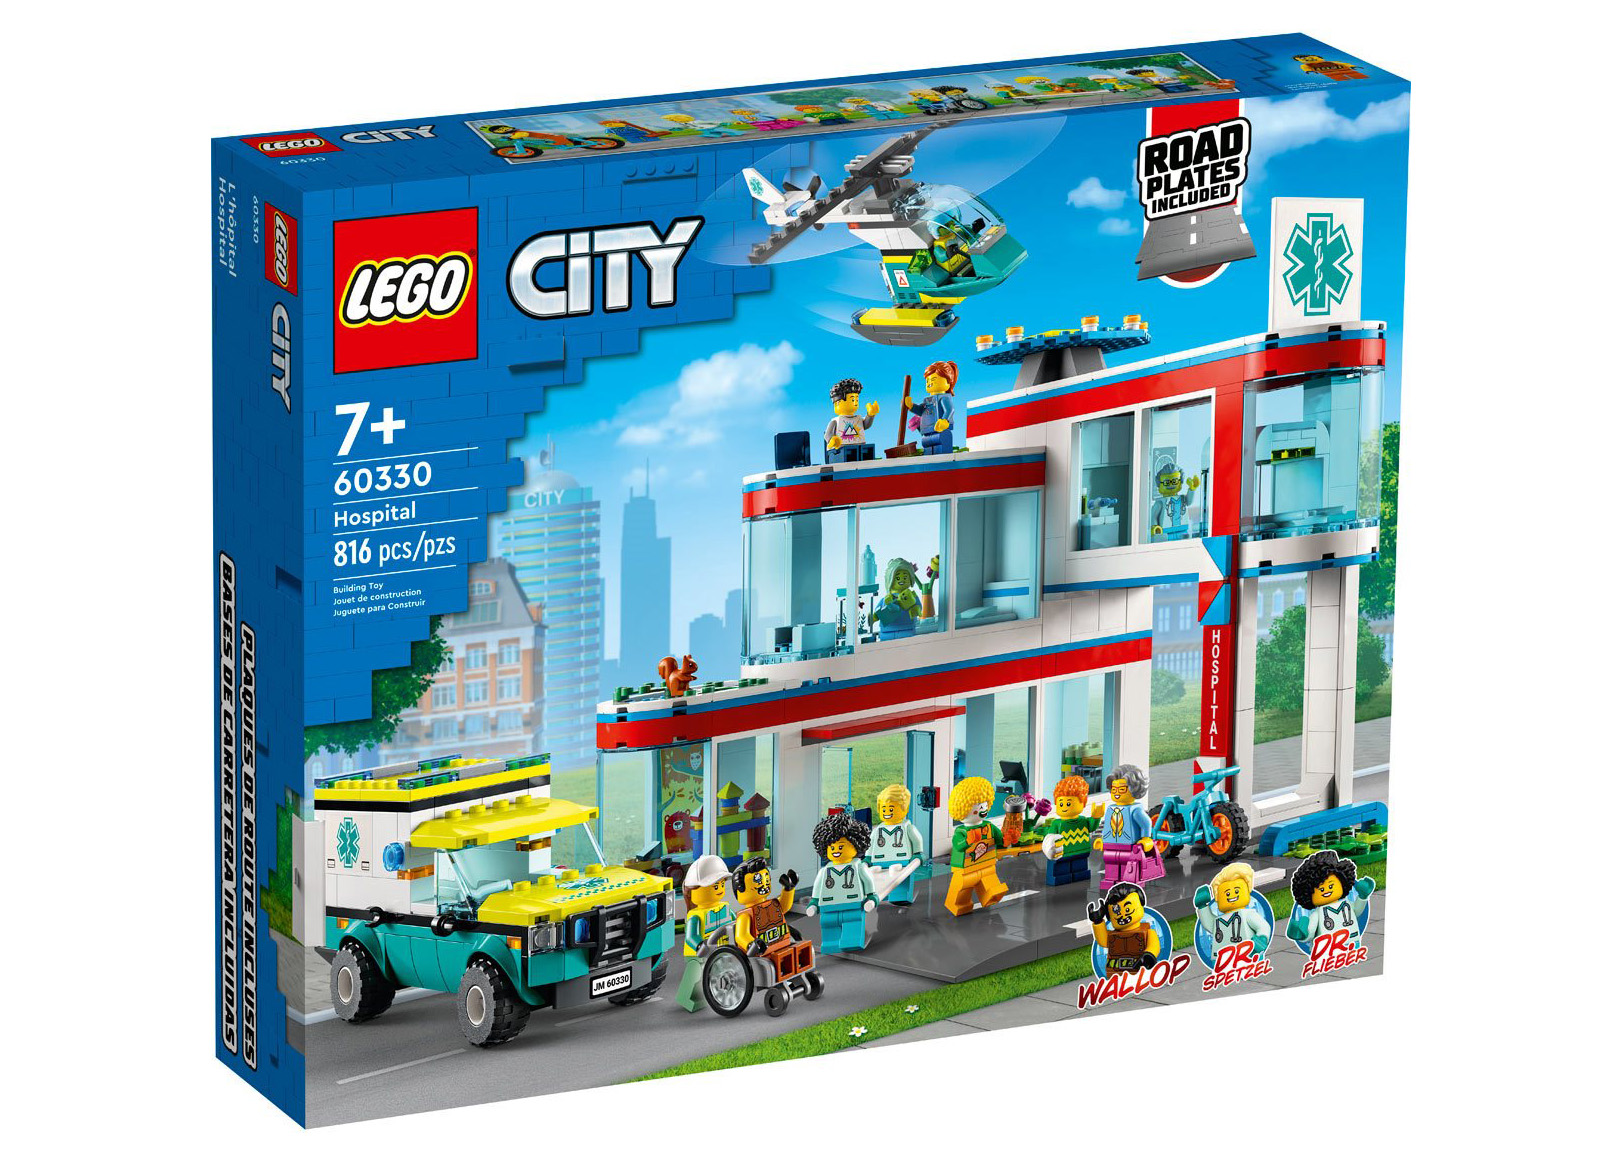 LEGO City Hospital Set 60330